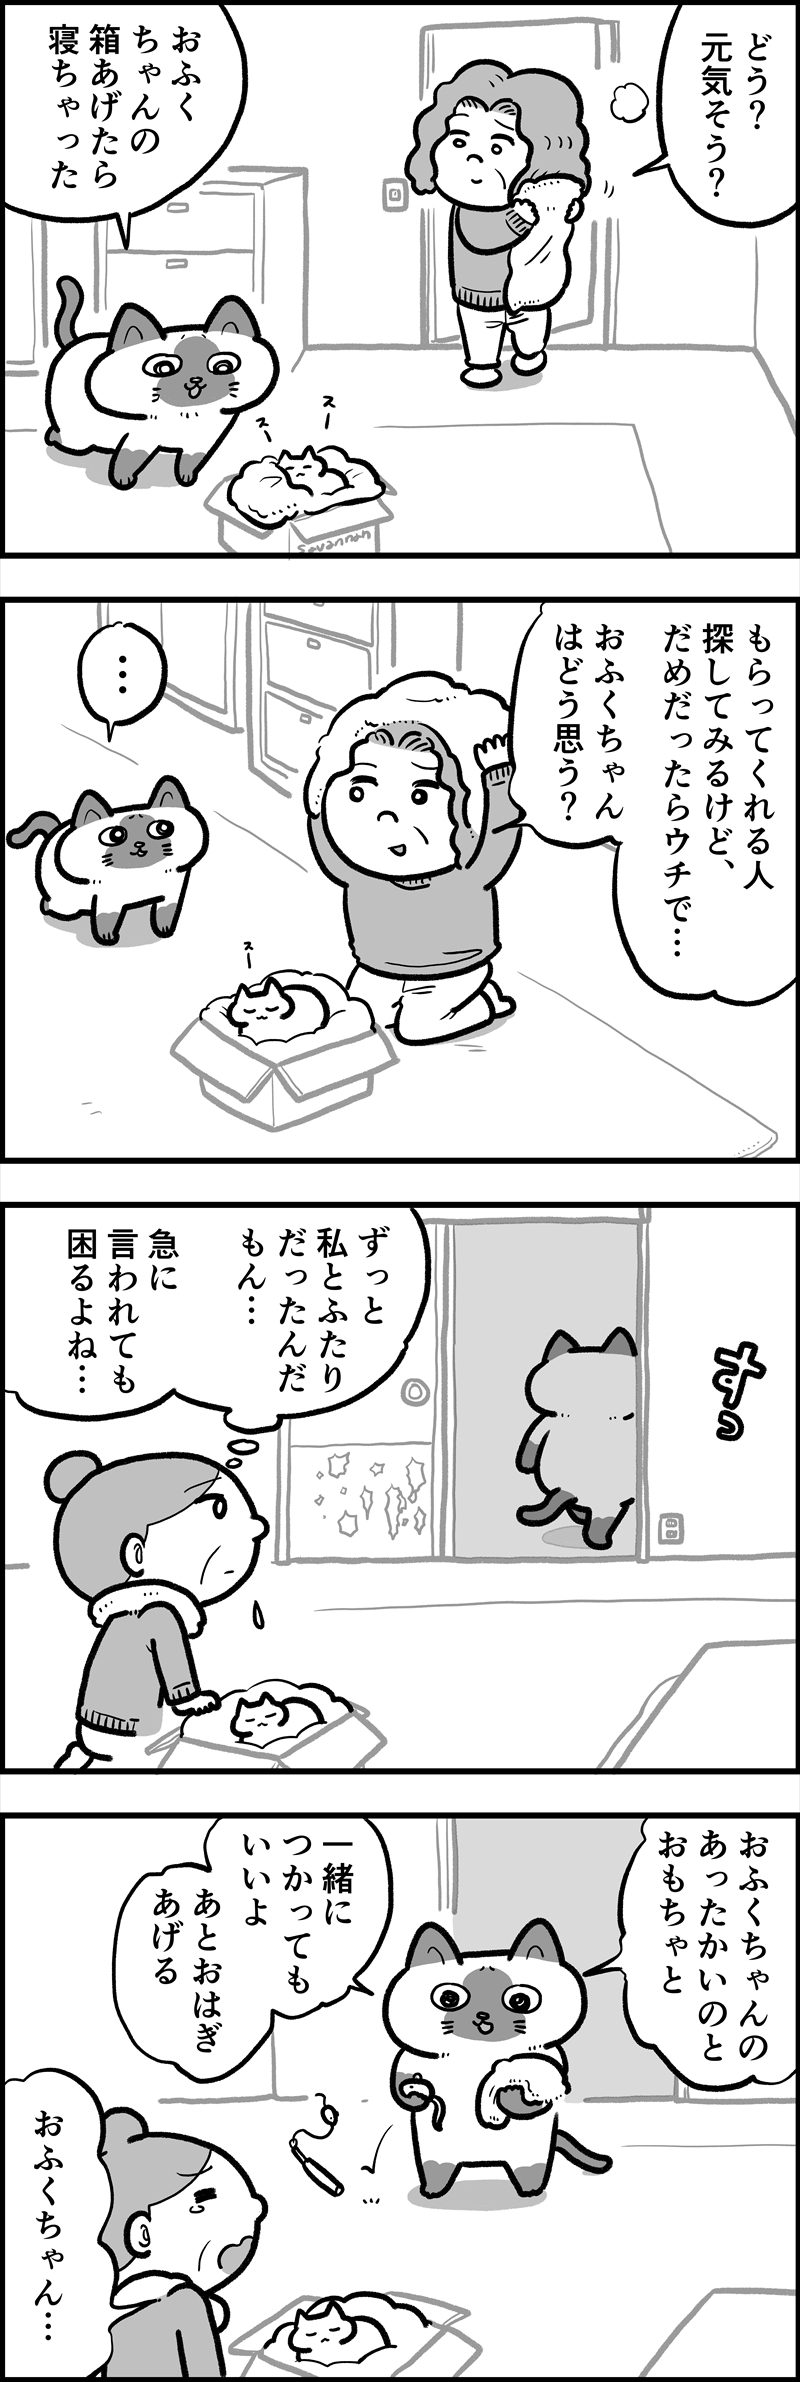 ofukuchan_manga_24_2_R.jpg